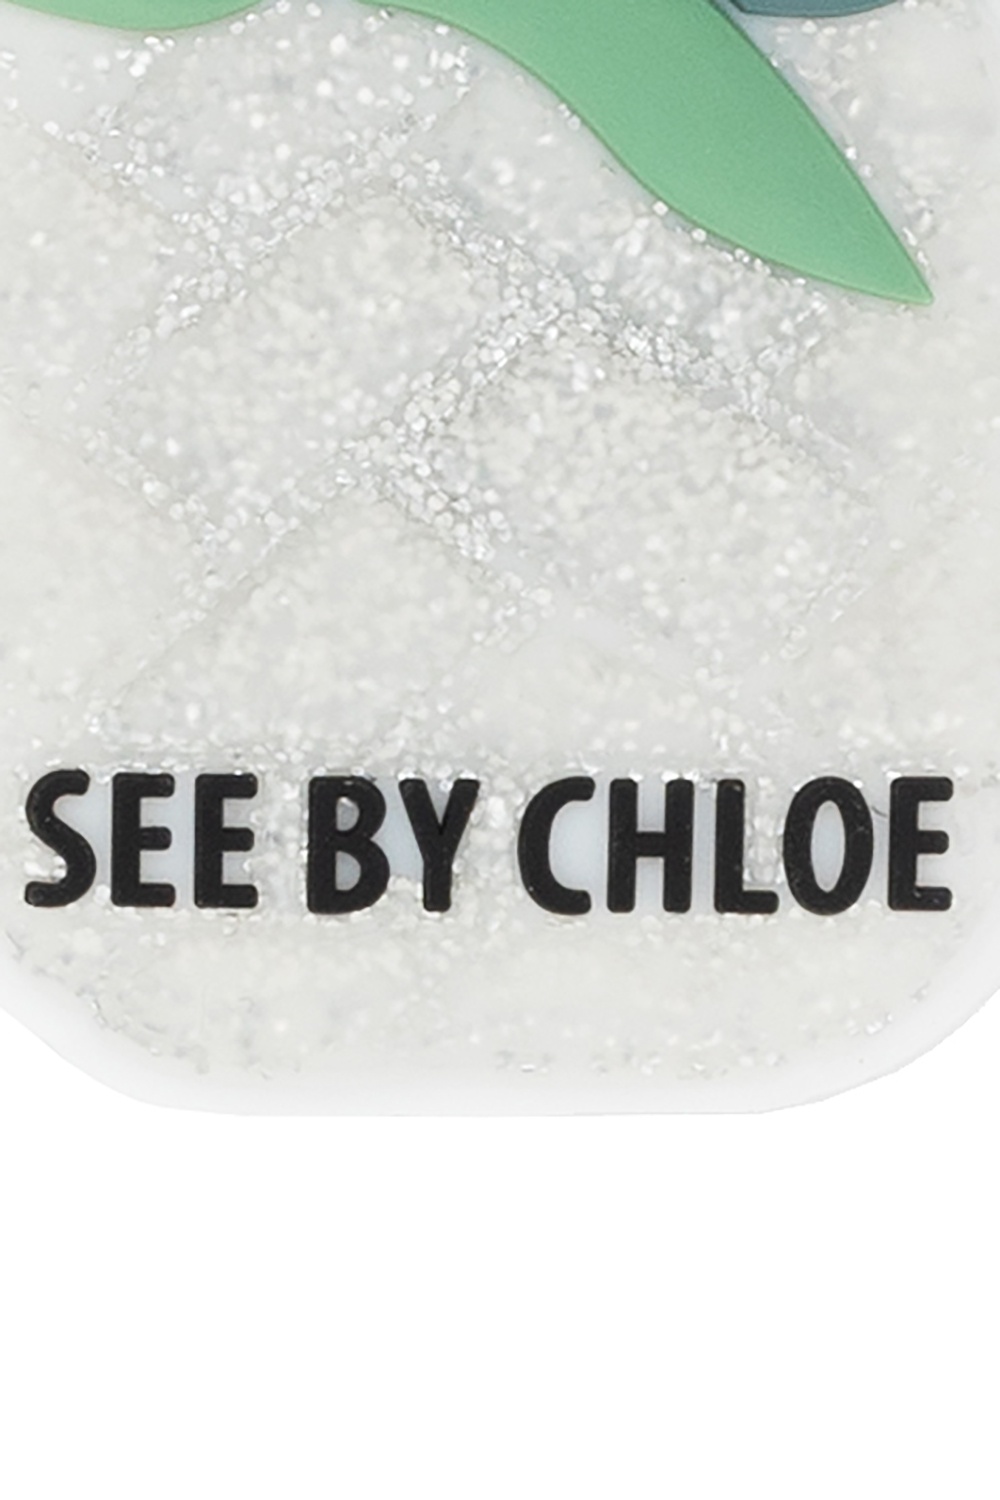 See By chloe wears Phone holder